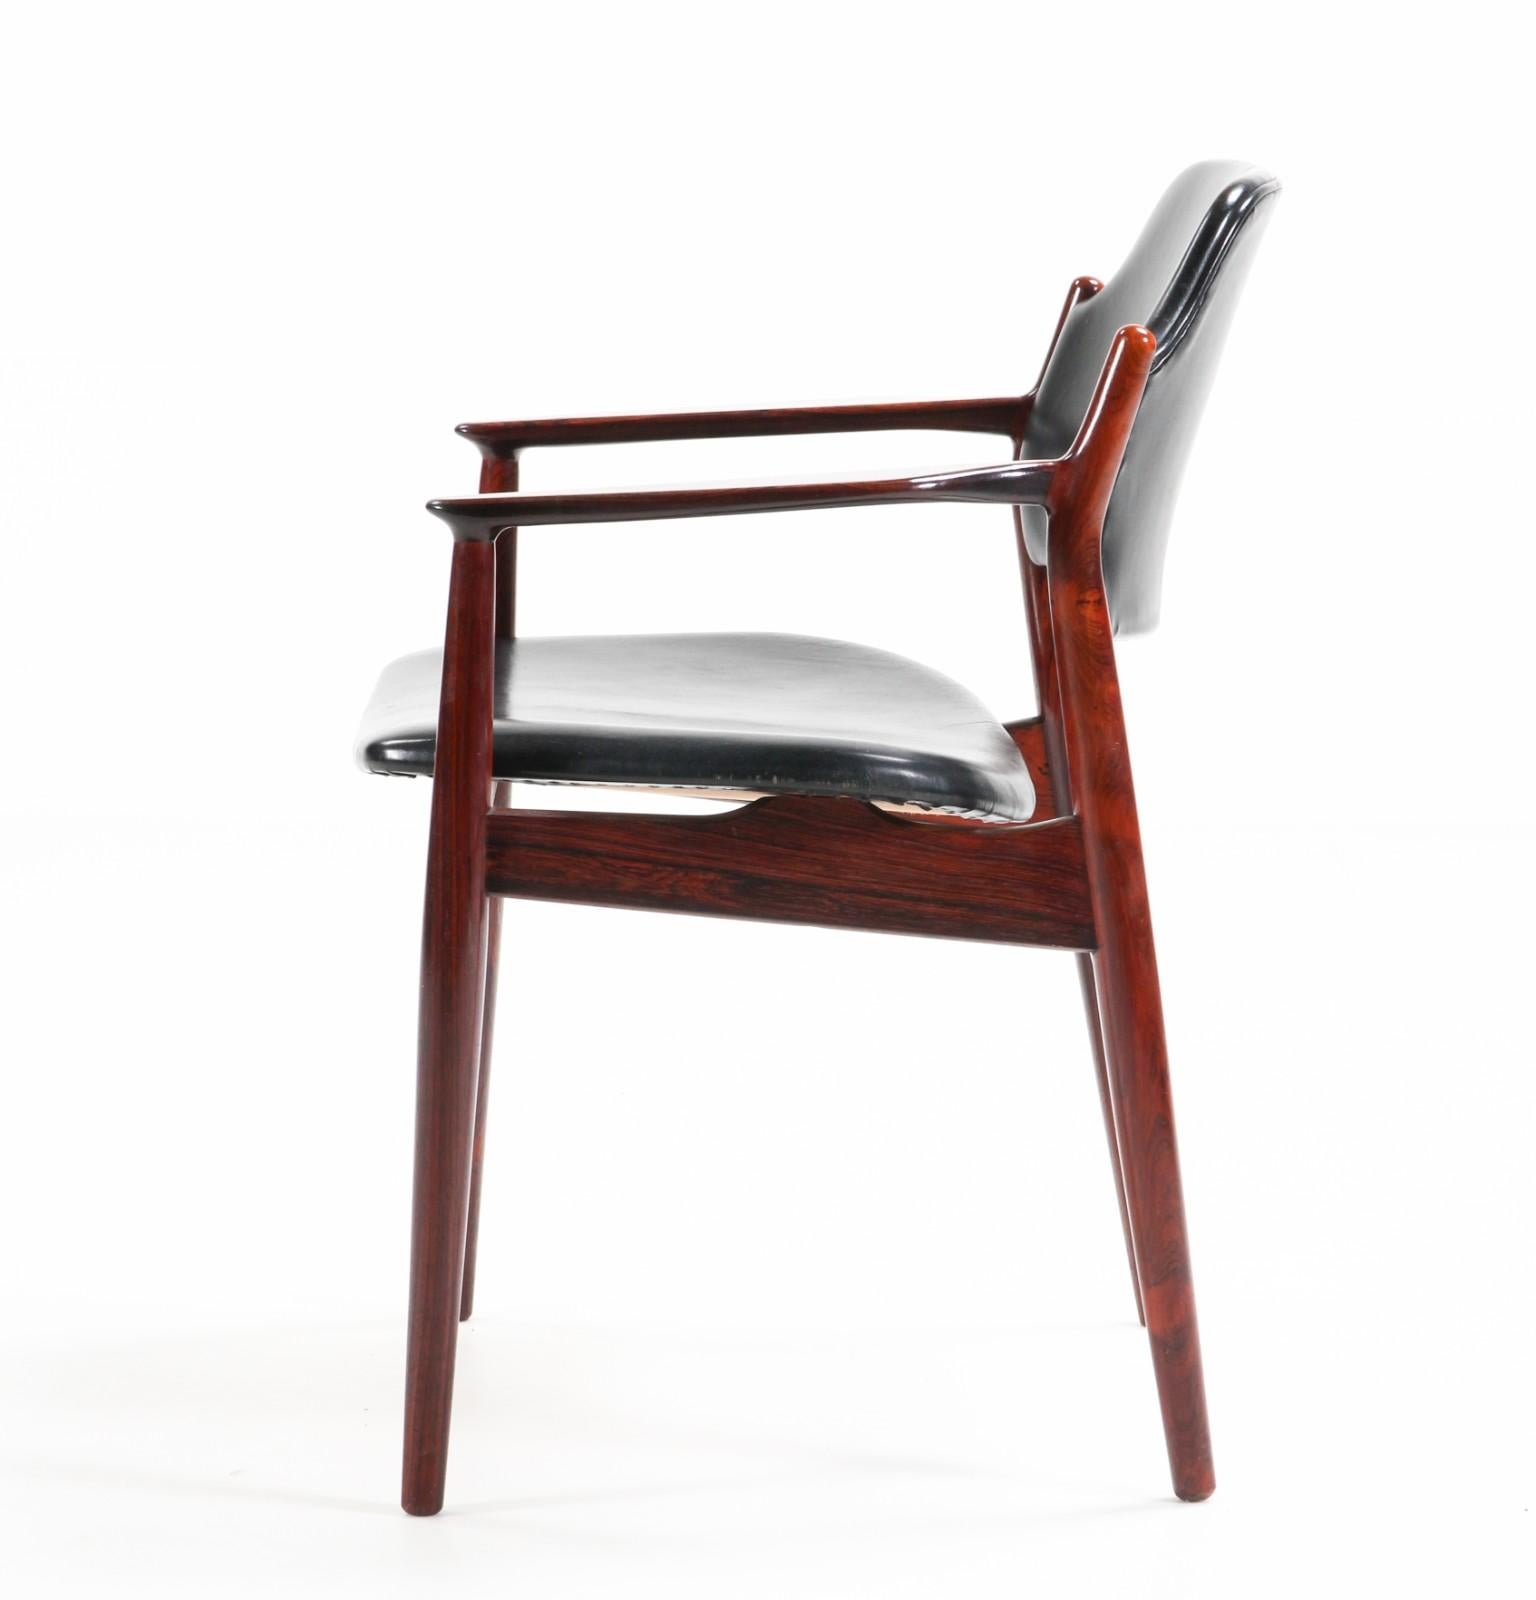 Seltenes Paar Tisch- oder Schreibtischsessel Modell 62A, entworfen von Arne Vodder. Die Linien und Ausführungen sind raffiniert. Die skulpturalen Details der Rückenlehne mit ihren schönen Gelenken schaffen eine großartige Kombination aus Komfort und